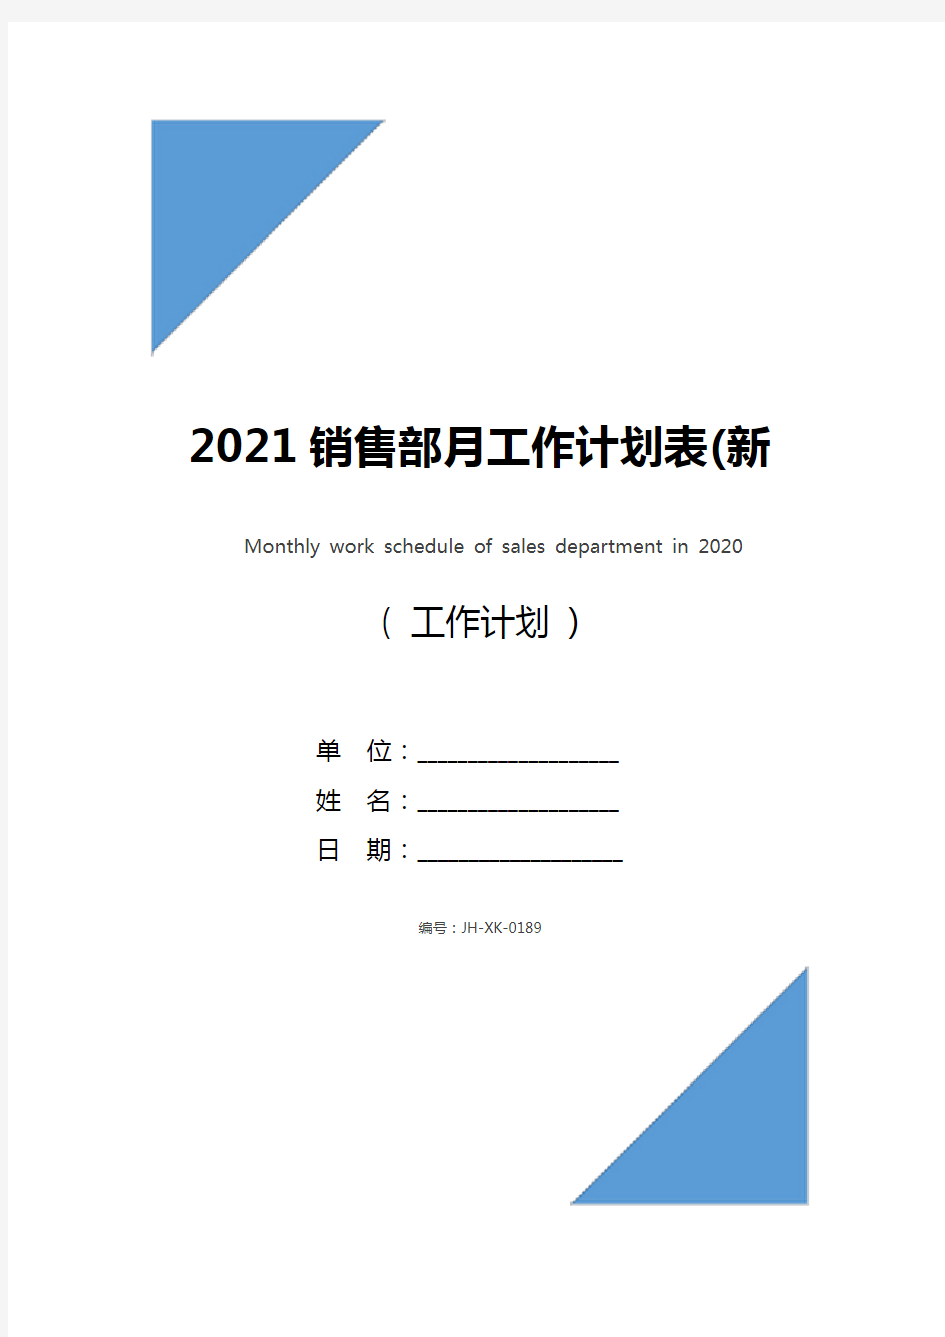 2021销售部月工作计划表(新编版)